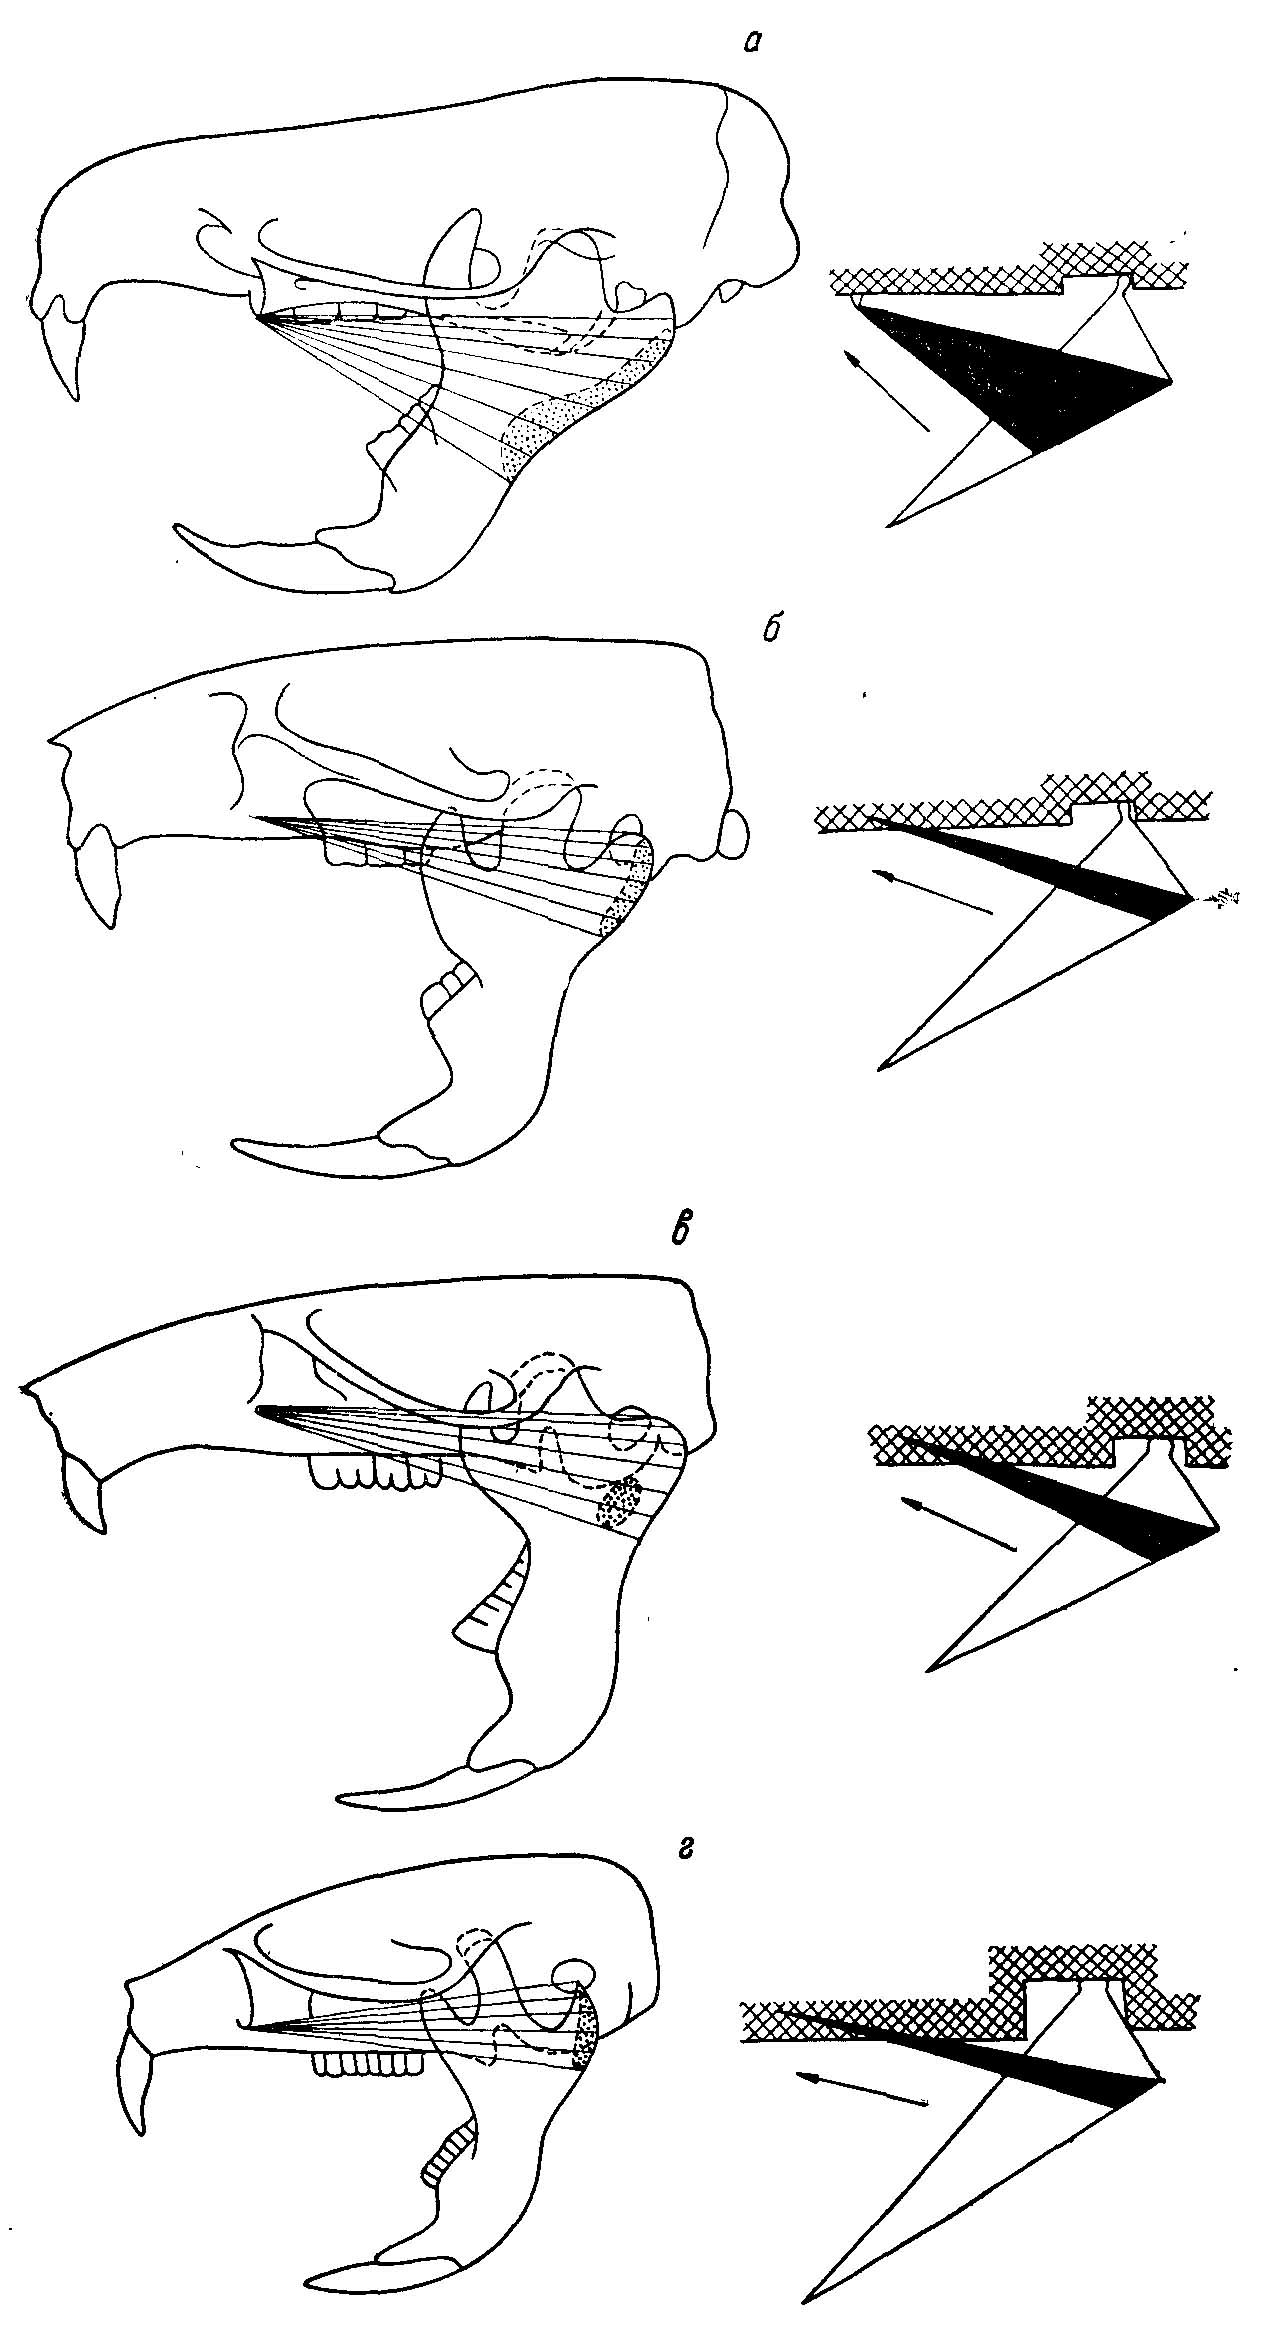 Рис. 3. Изменение функций m. mass. lateralis pars superficialis. Пунктиром показаны места прикрепления мышцы на внутренней стороне челюсти. Справа — схемы действия наружной поверхностной порции жевательной мышцы (у полевок эта мышца участвует только в продольноперетирающих движениях) (из Воронцова, 1963ж). а — Ichthyomys soderstrdmi de Winton; б — Cricetus cricetus L.; в — Neotoma cinerea Ord; a — Microtvs agrestis L.